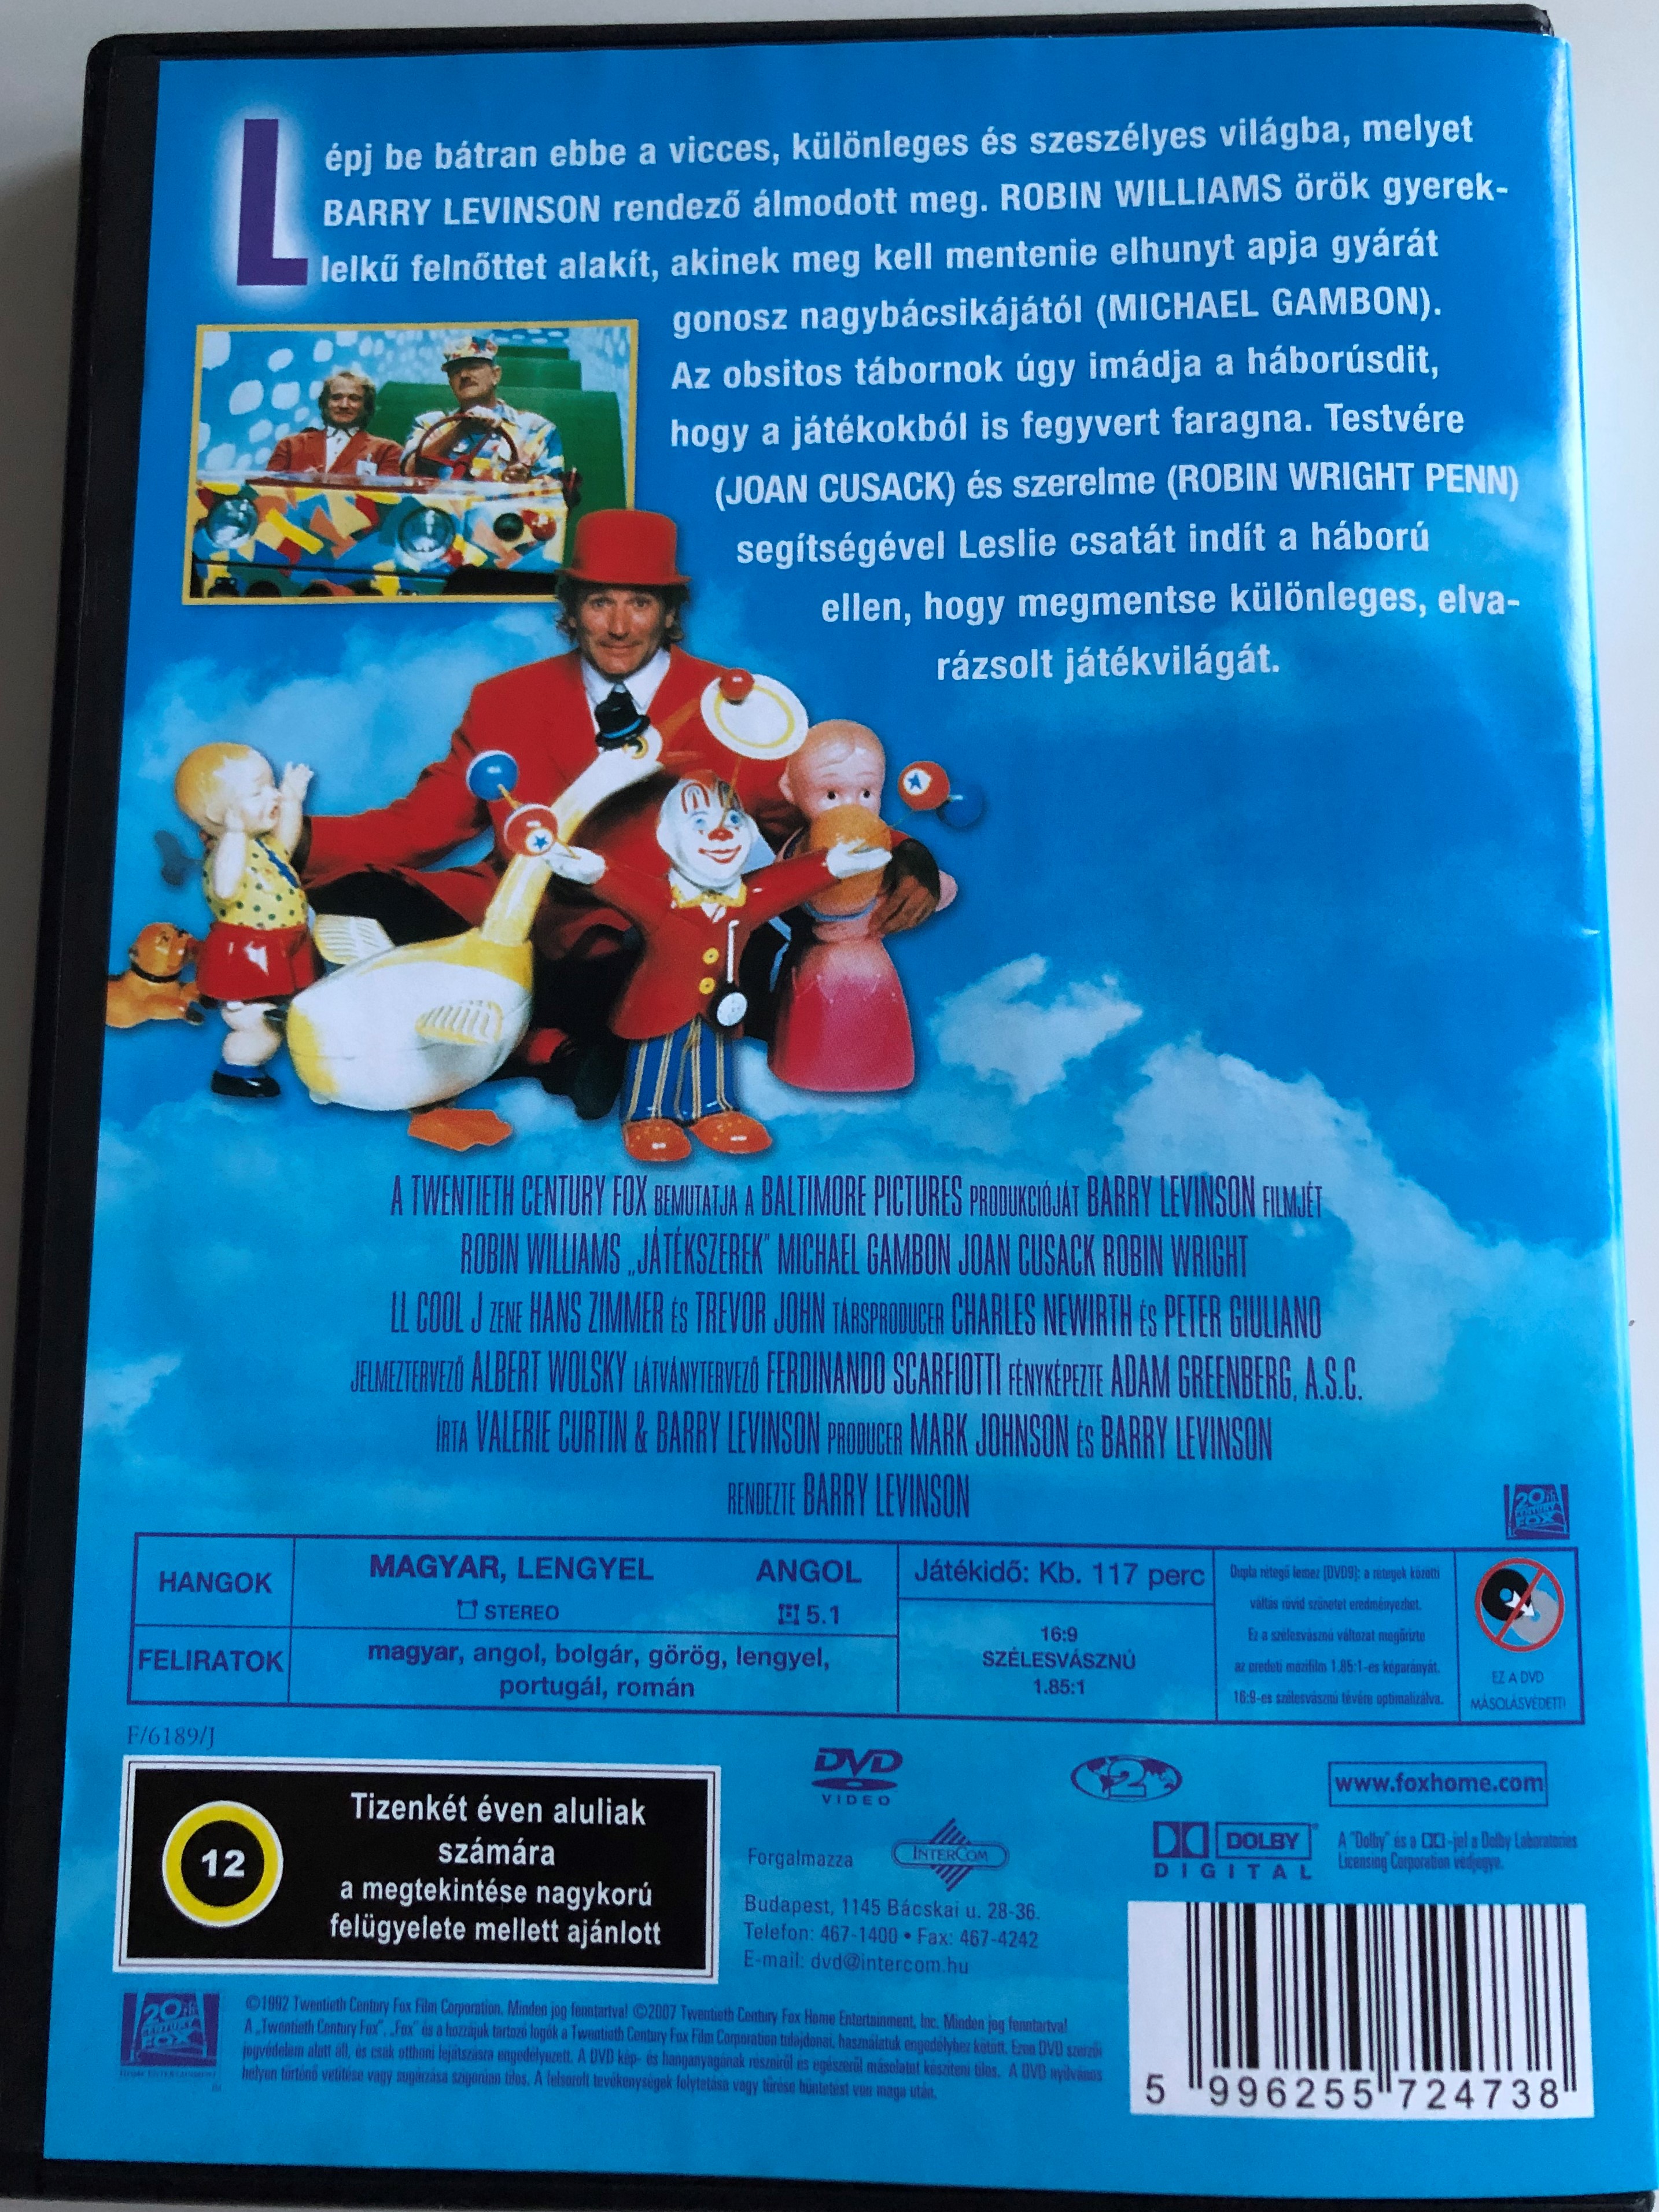 toys-dvd-1992-j-t-kszerek-directed-by-barry-levinson-2.jpg